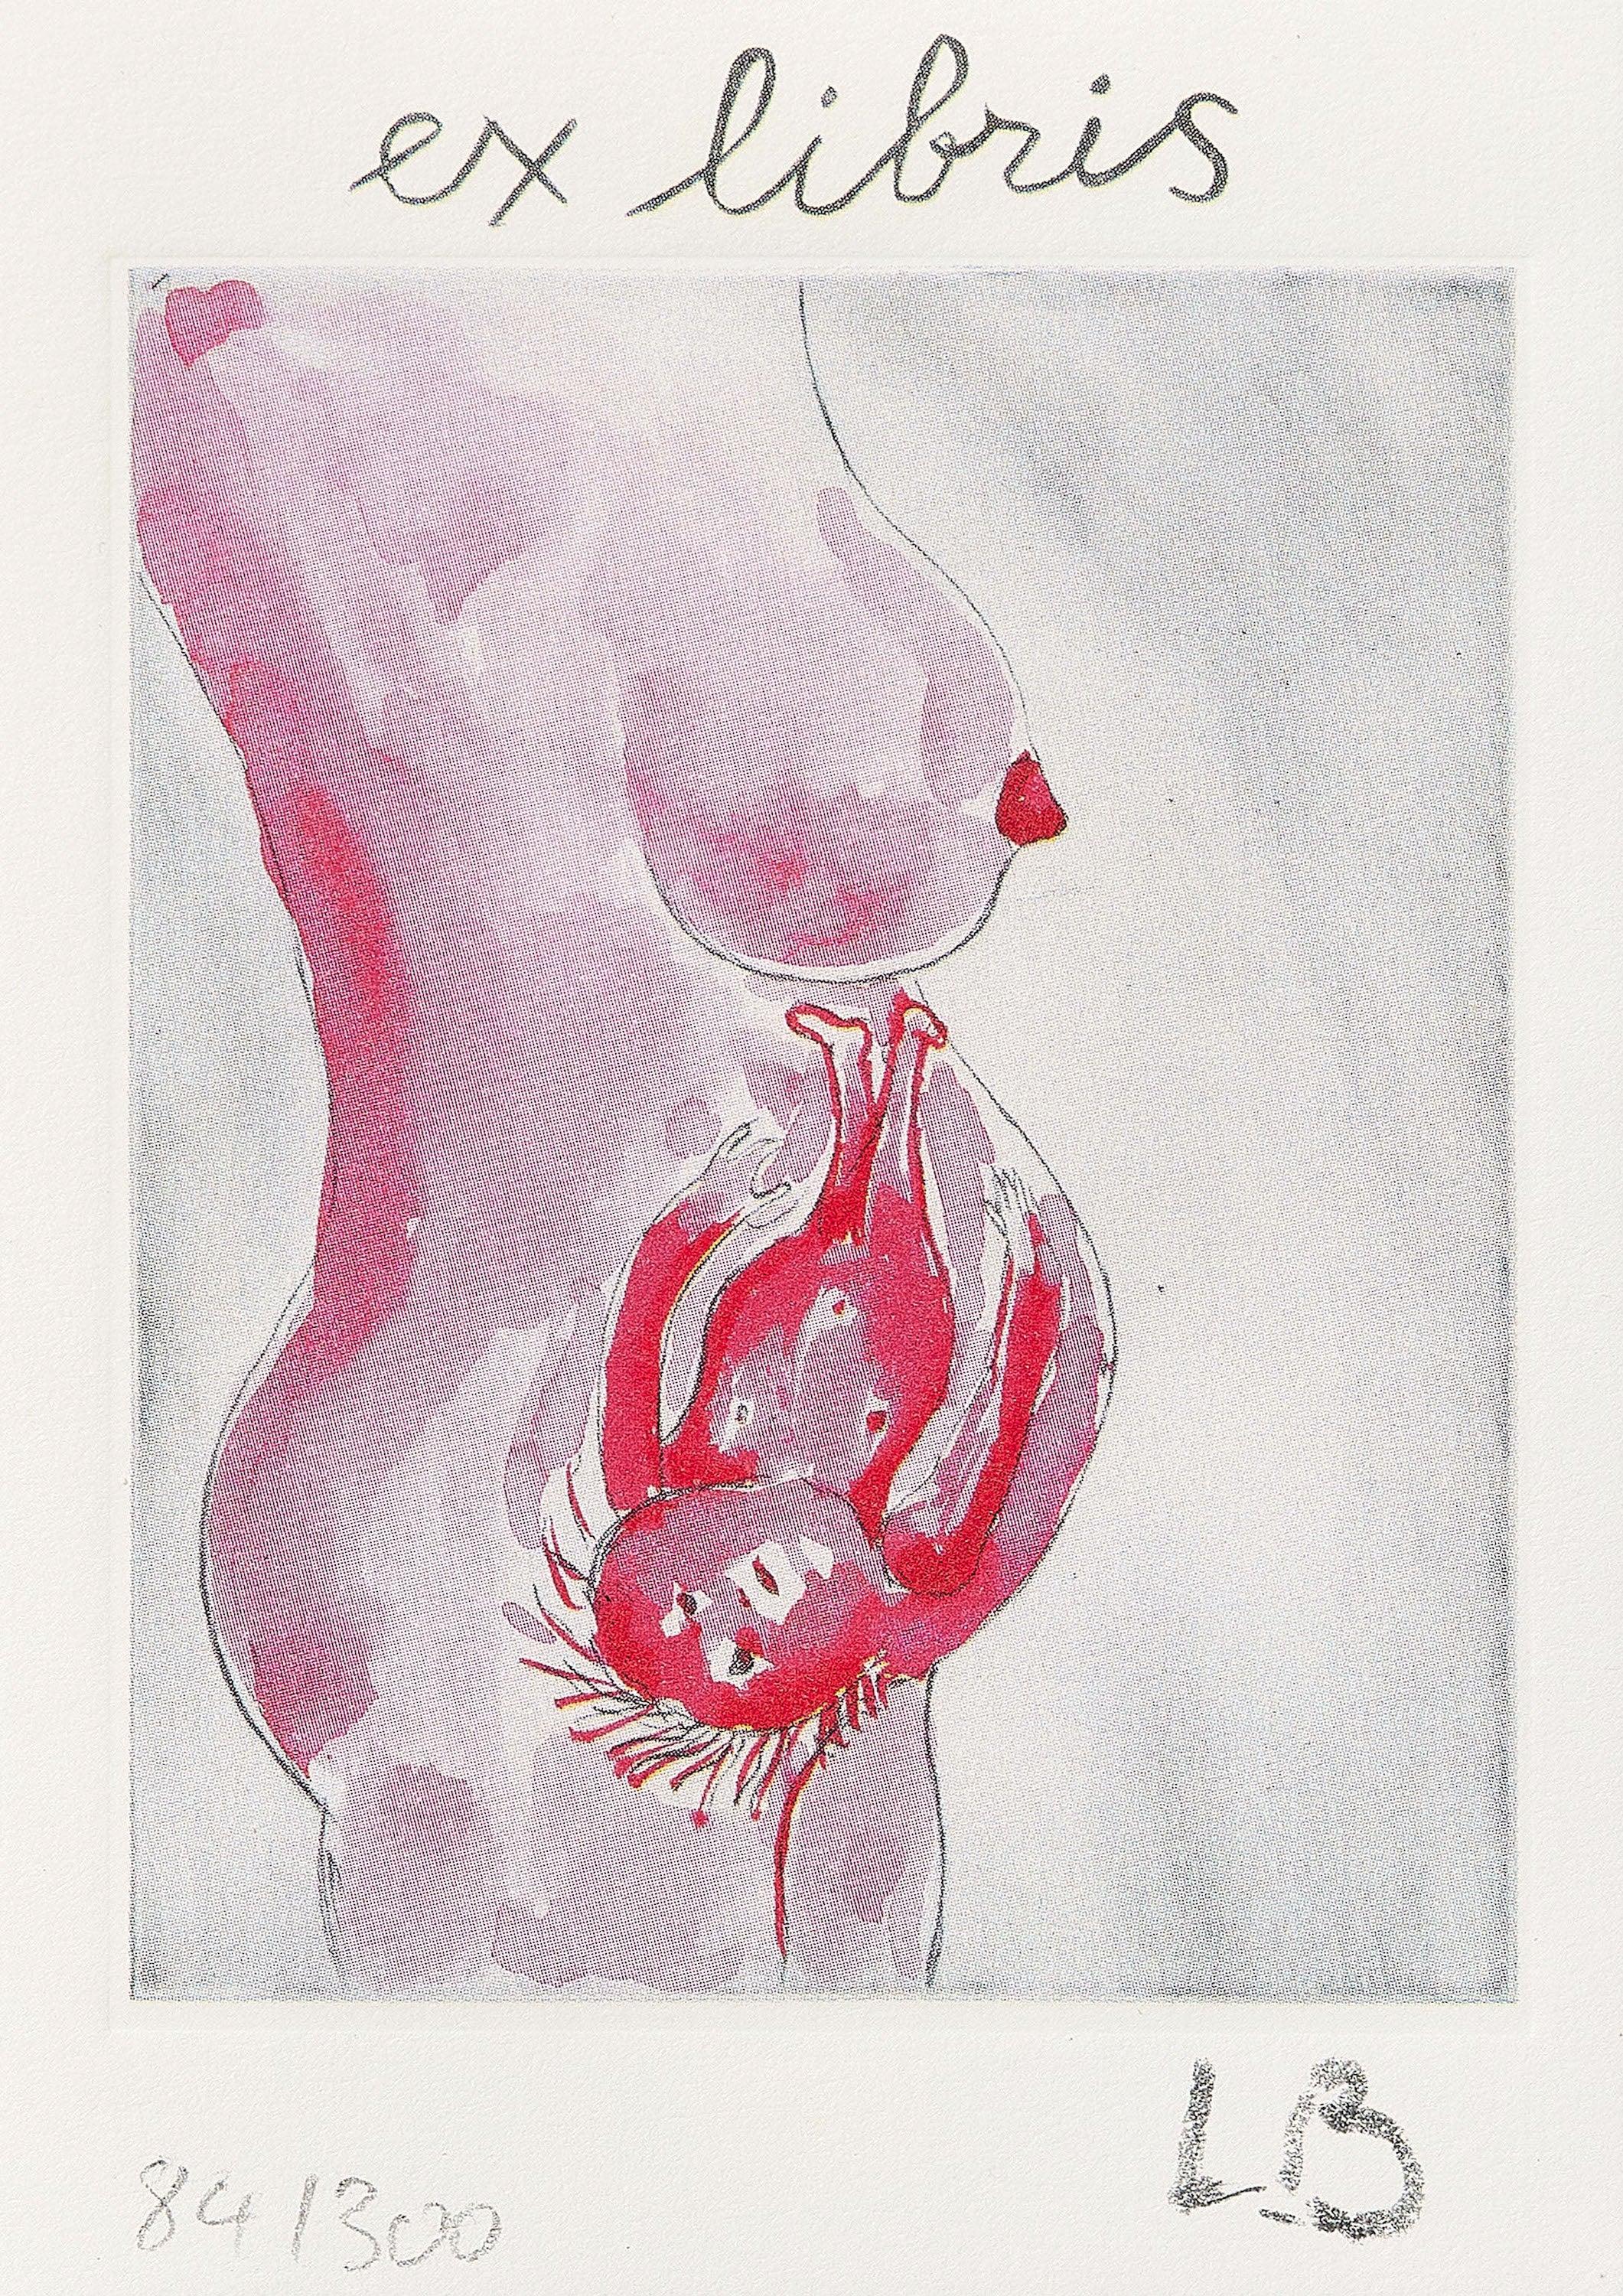 The Reticent Child (Ex Libris) - Impression, texte, art féministe de Louise Bourgeois